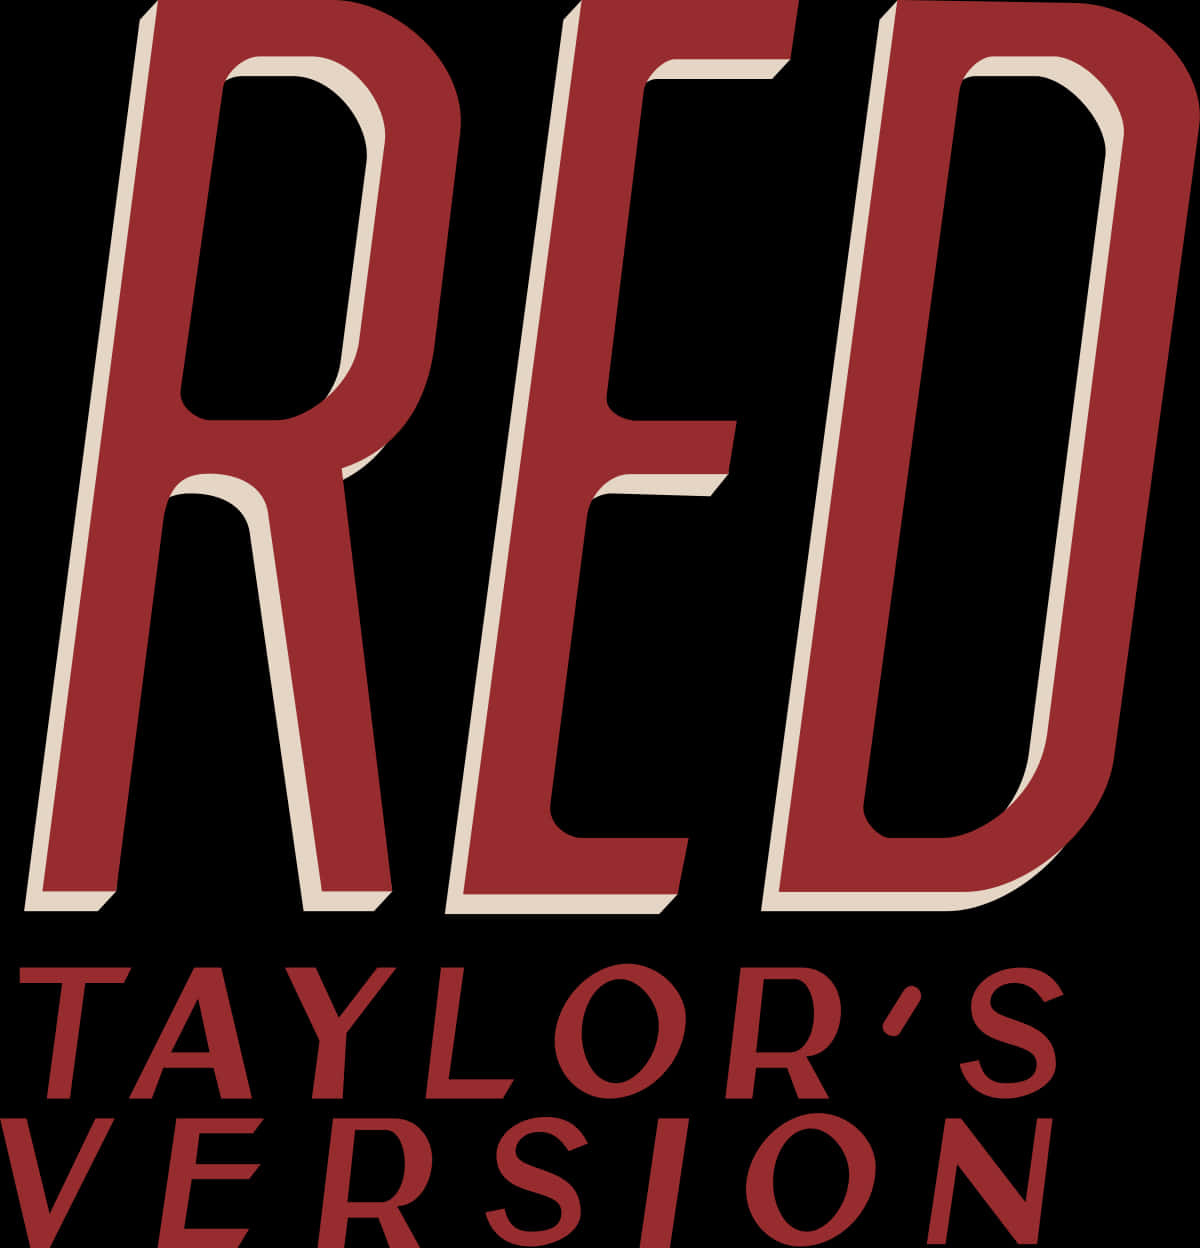 Alle øjne på Taylor Swift i hendes fantastiske røde Taylors Version. Wallpaper